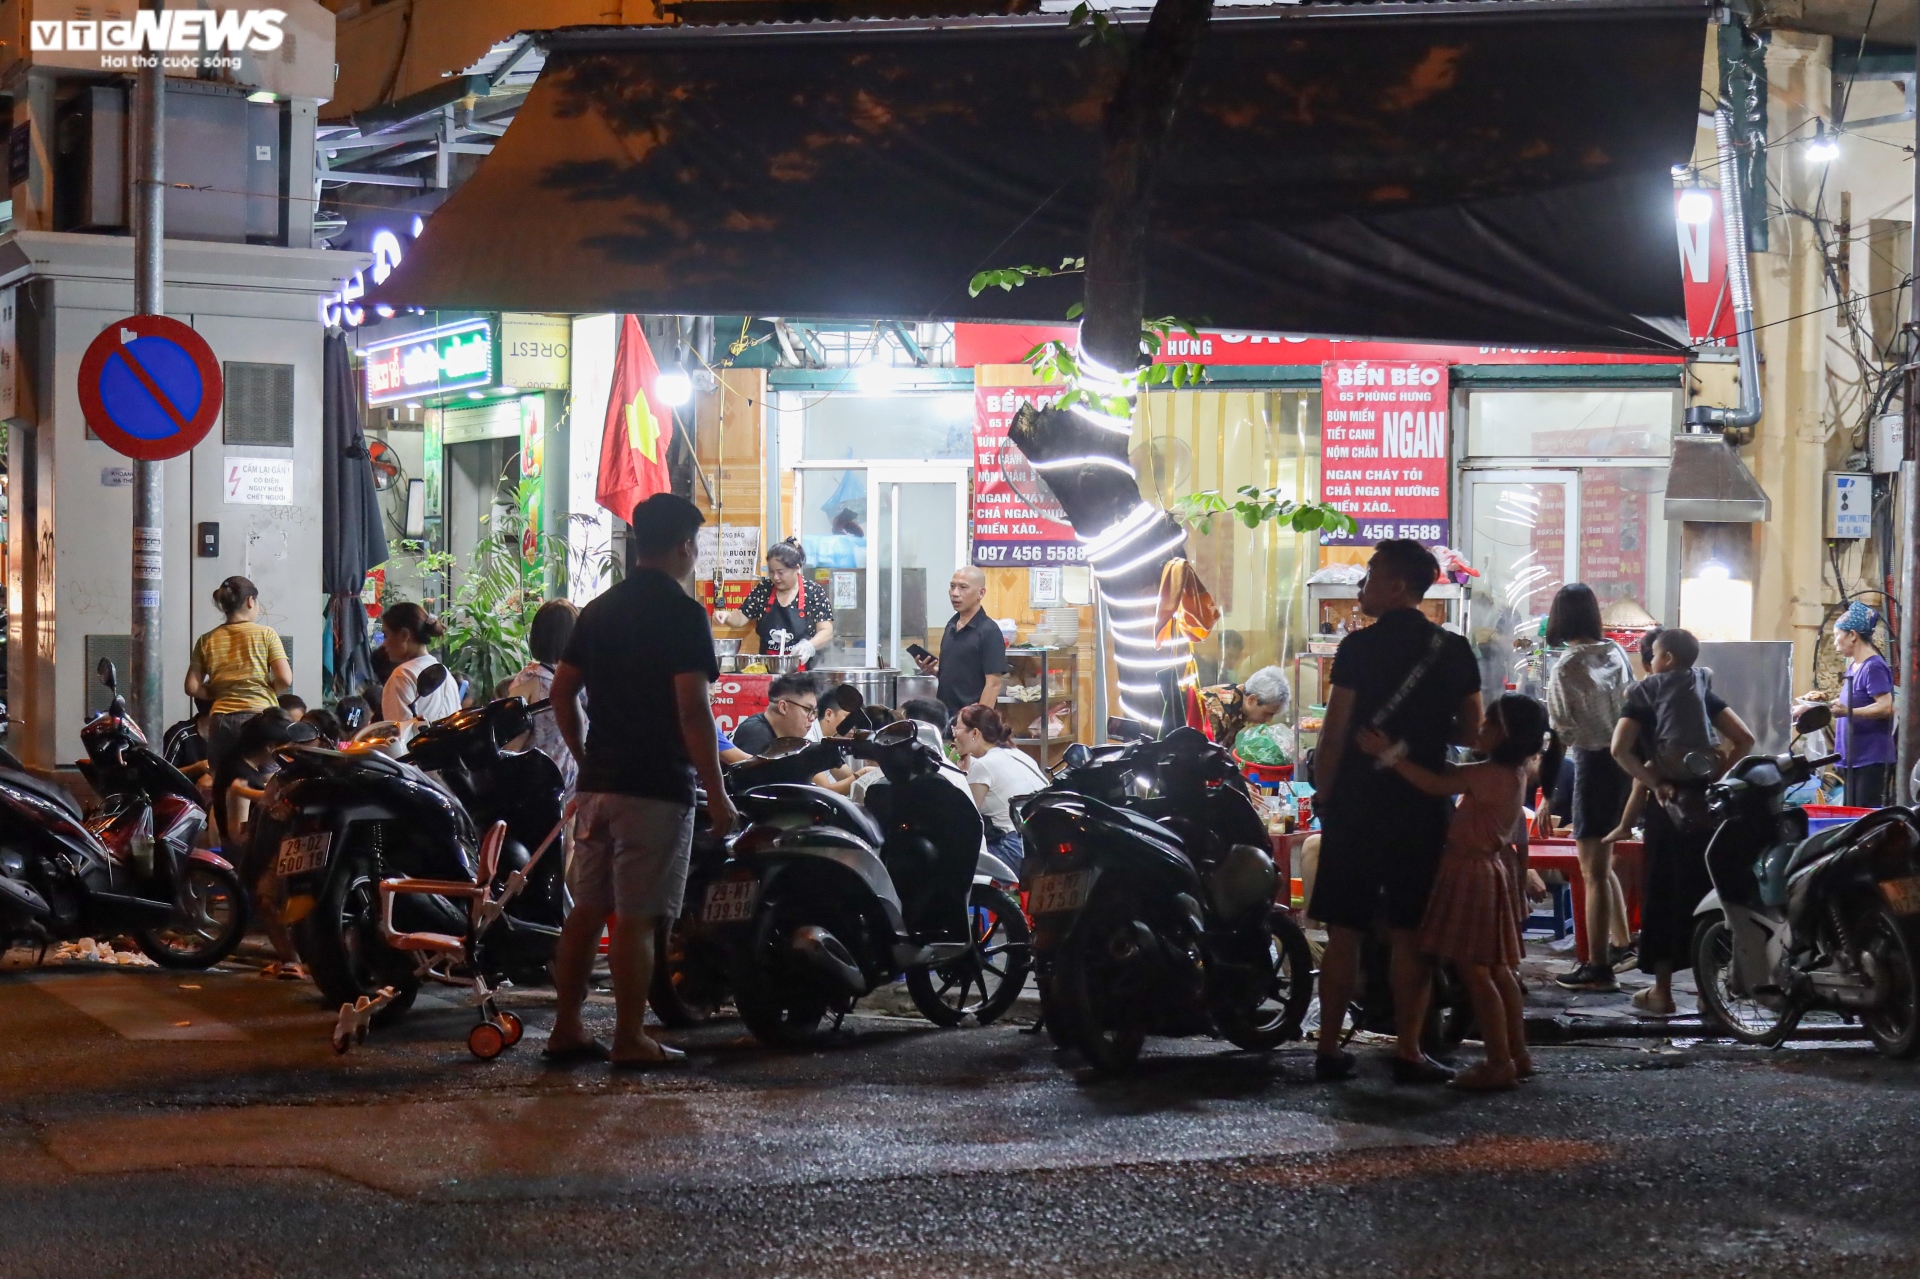 Hàng quán vỉa hè phố cổ Hà Nội chật kín khách dịp nghỉ lễ Quốc khánh - 9